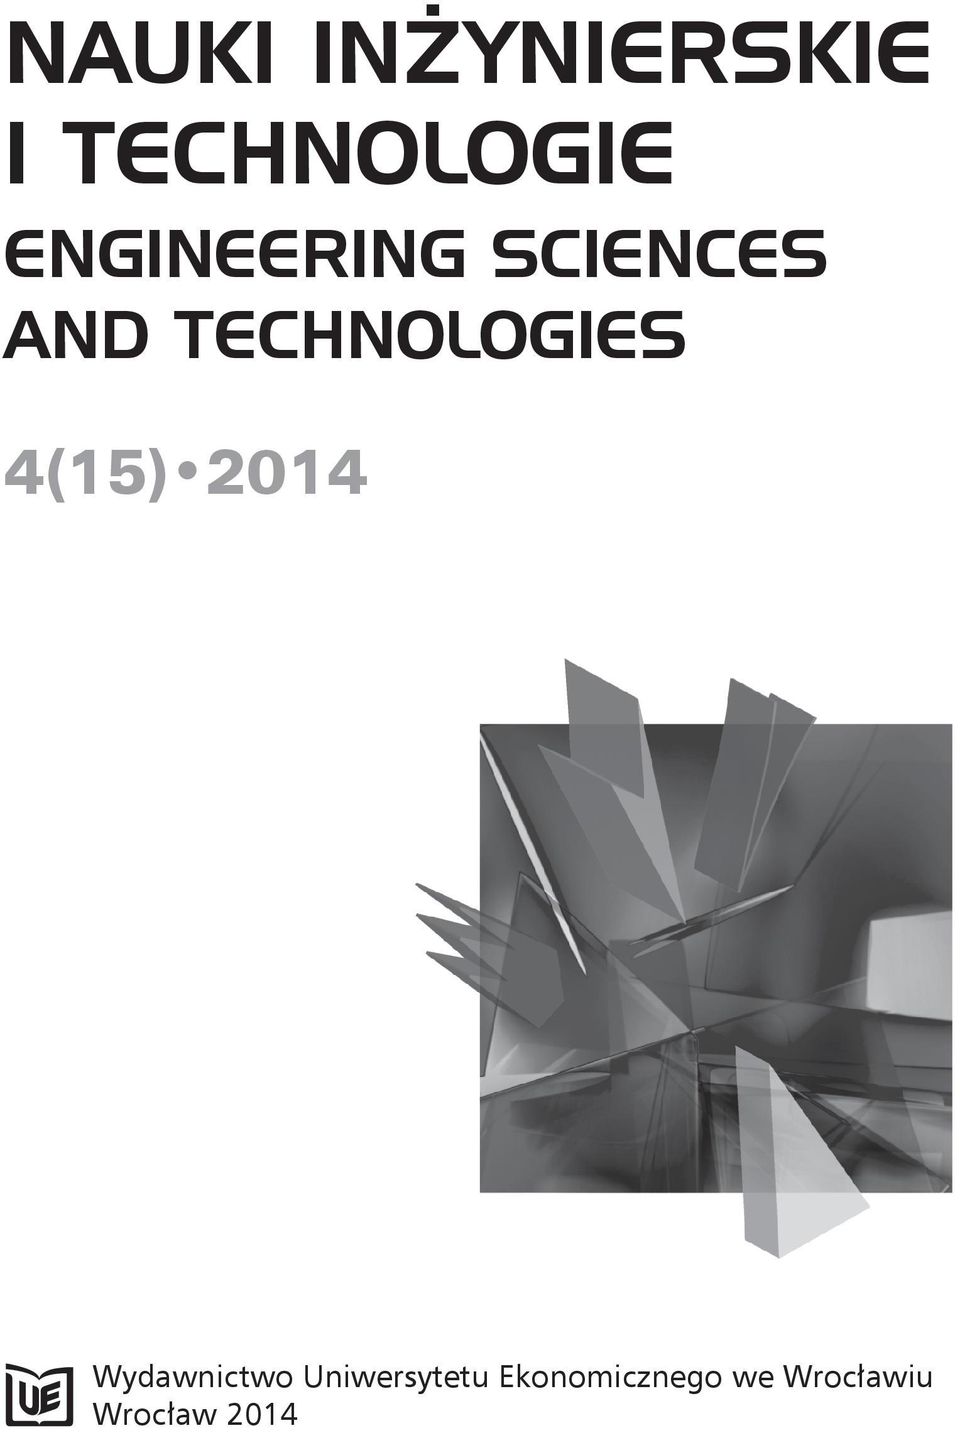 TECHNOLOGIES 4(15) 2014 Wydawnictwo